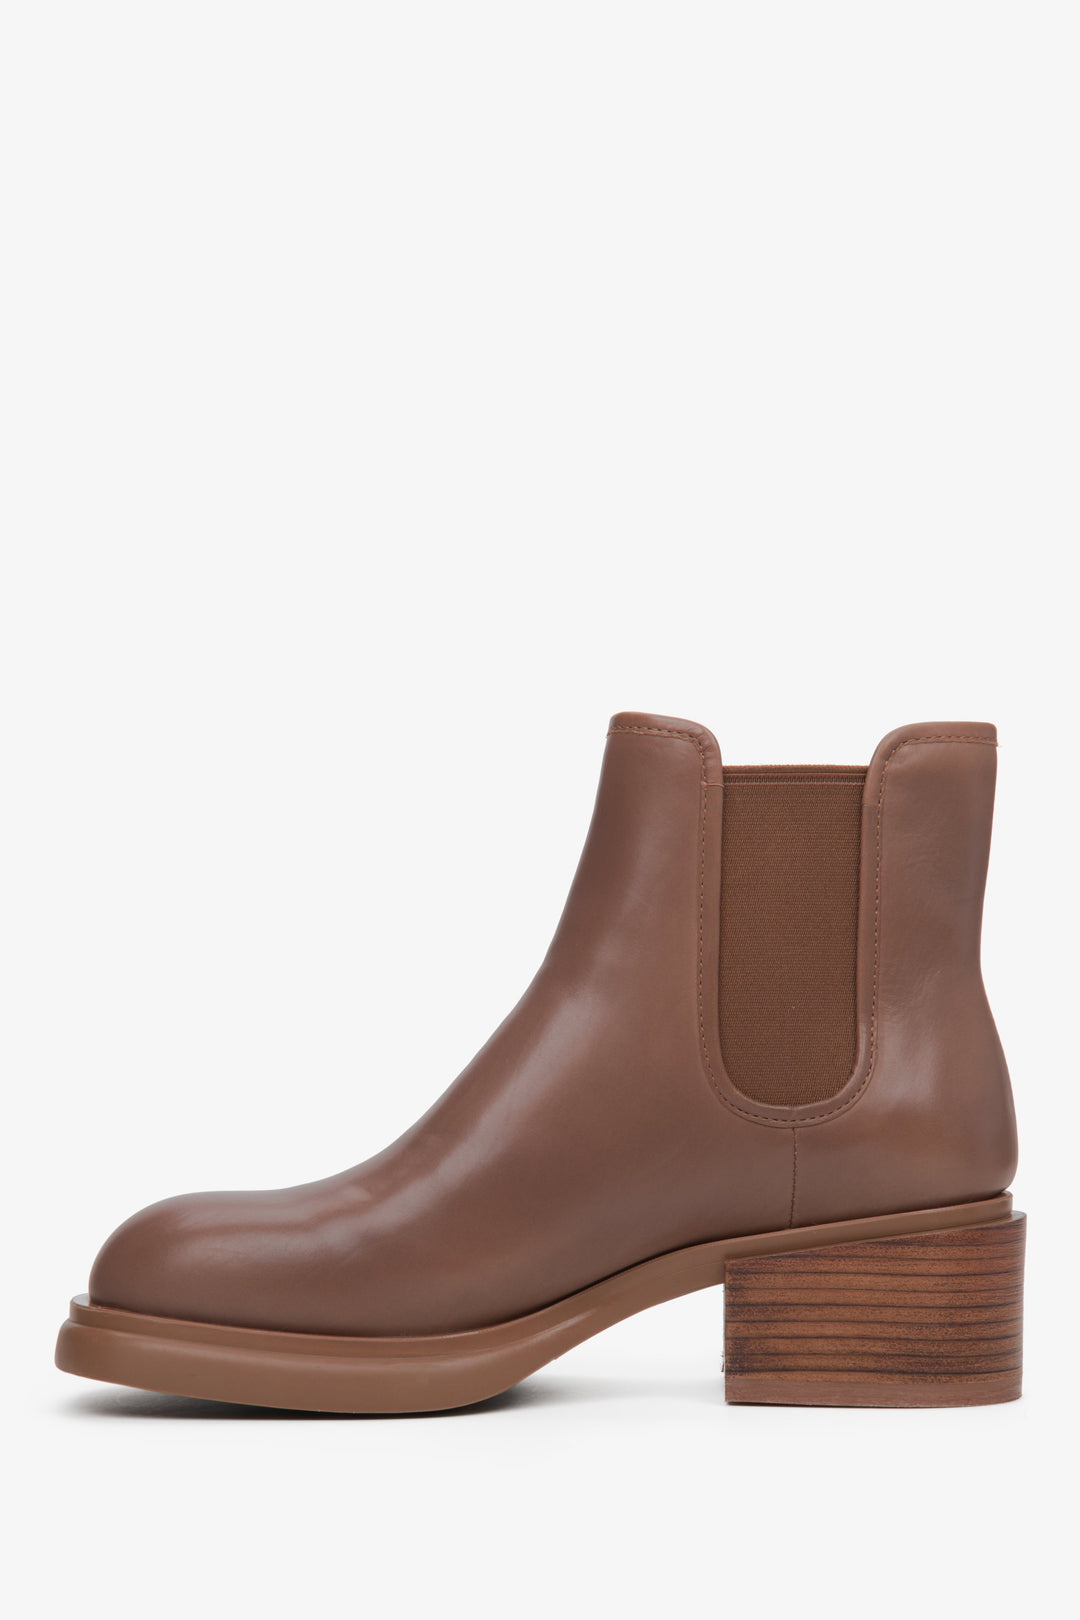 Women's brown ankle boots Estro - shoe profile.